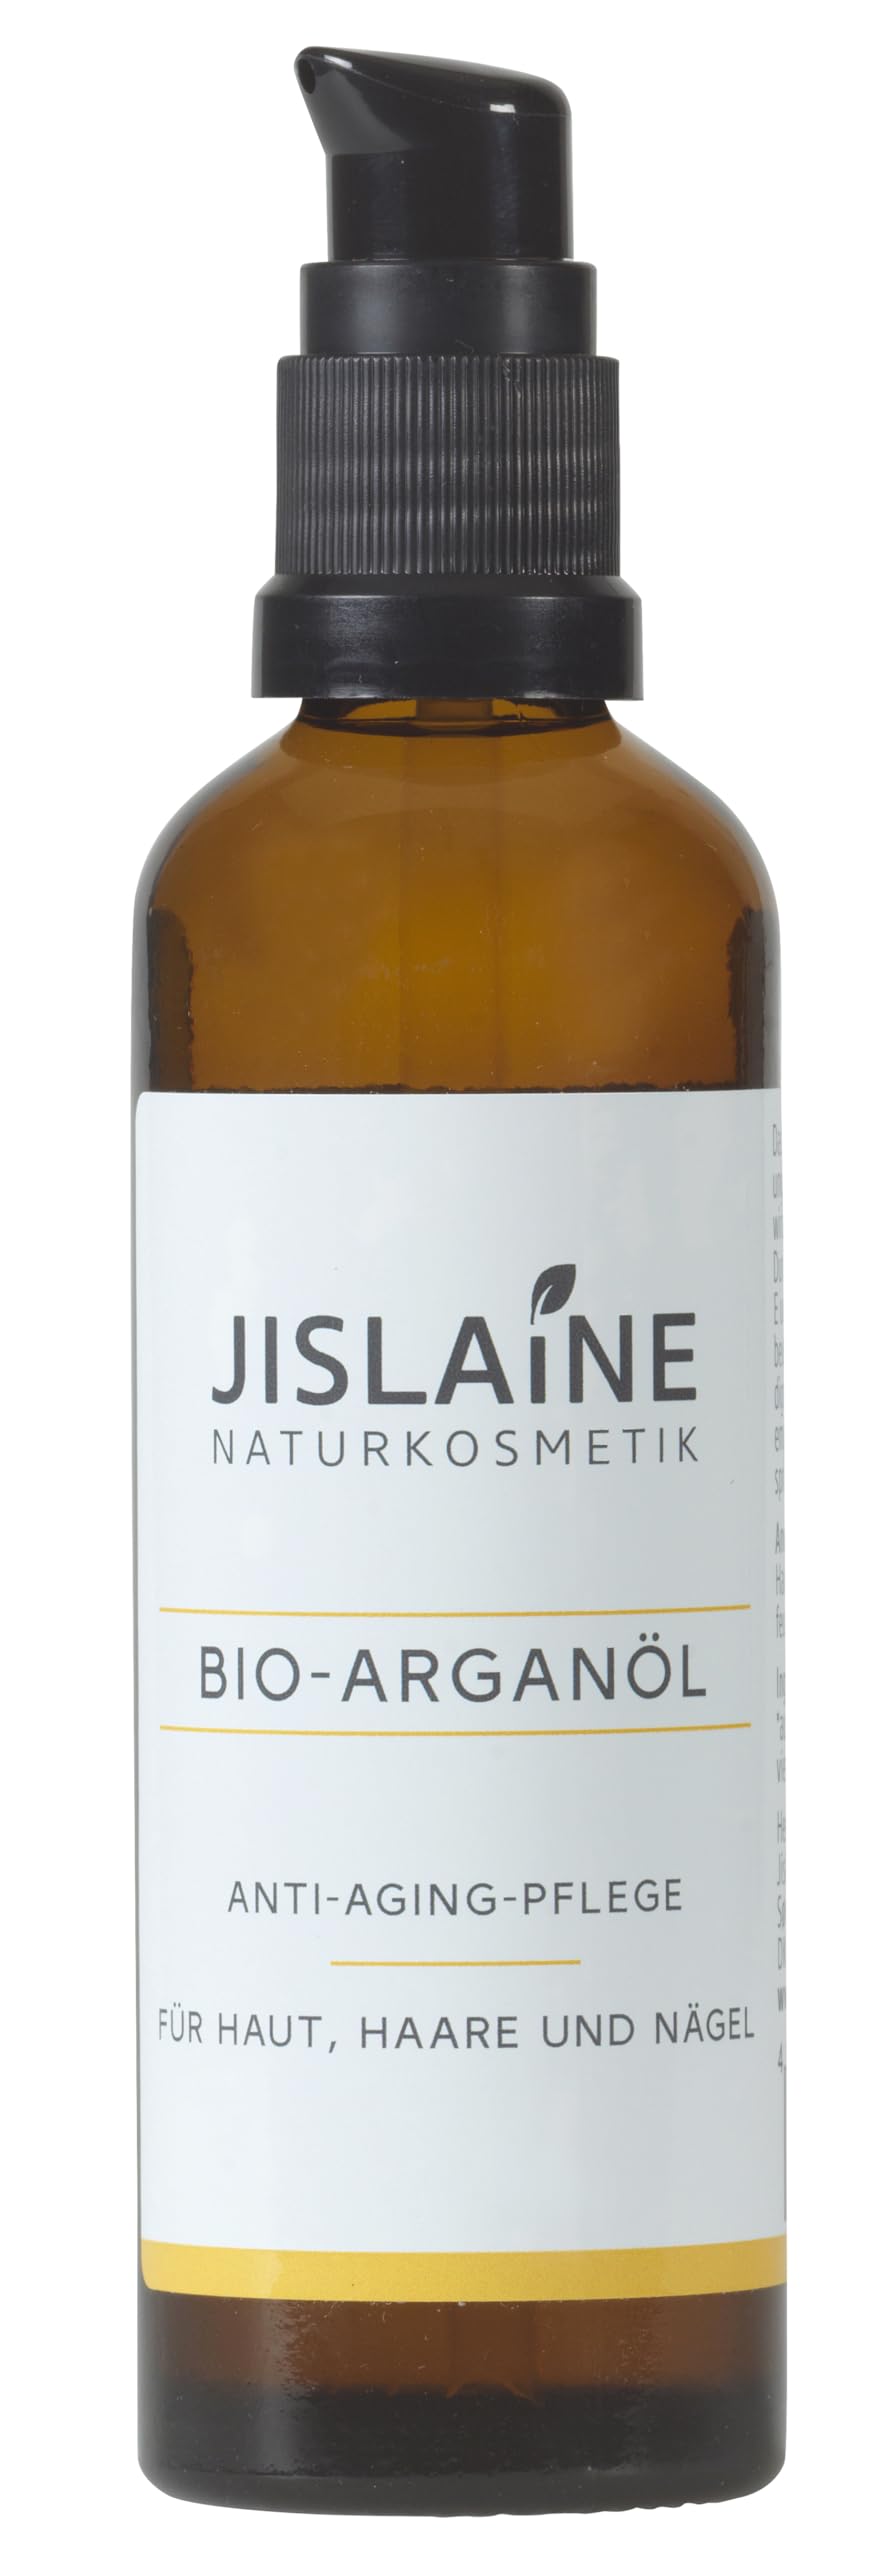 Jislaine Bio-Arganöl 75 ml ist: Unraffiniert, vegan und ohne Palmöl | Für Haut-, Haar & Nagelpflege - Glasflasche